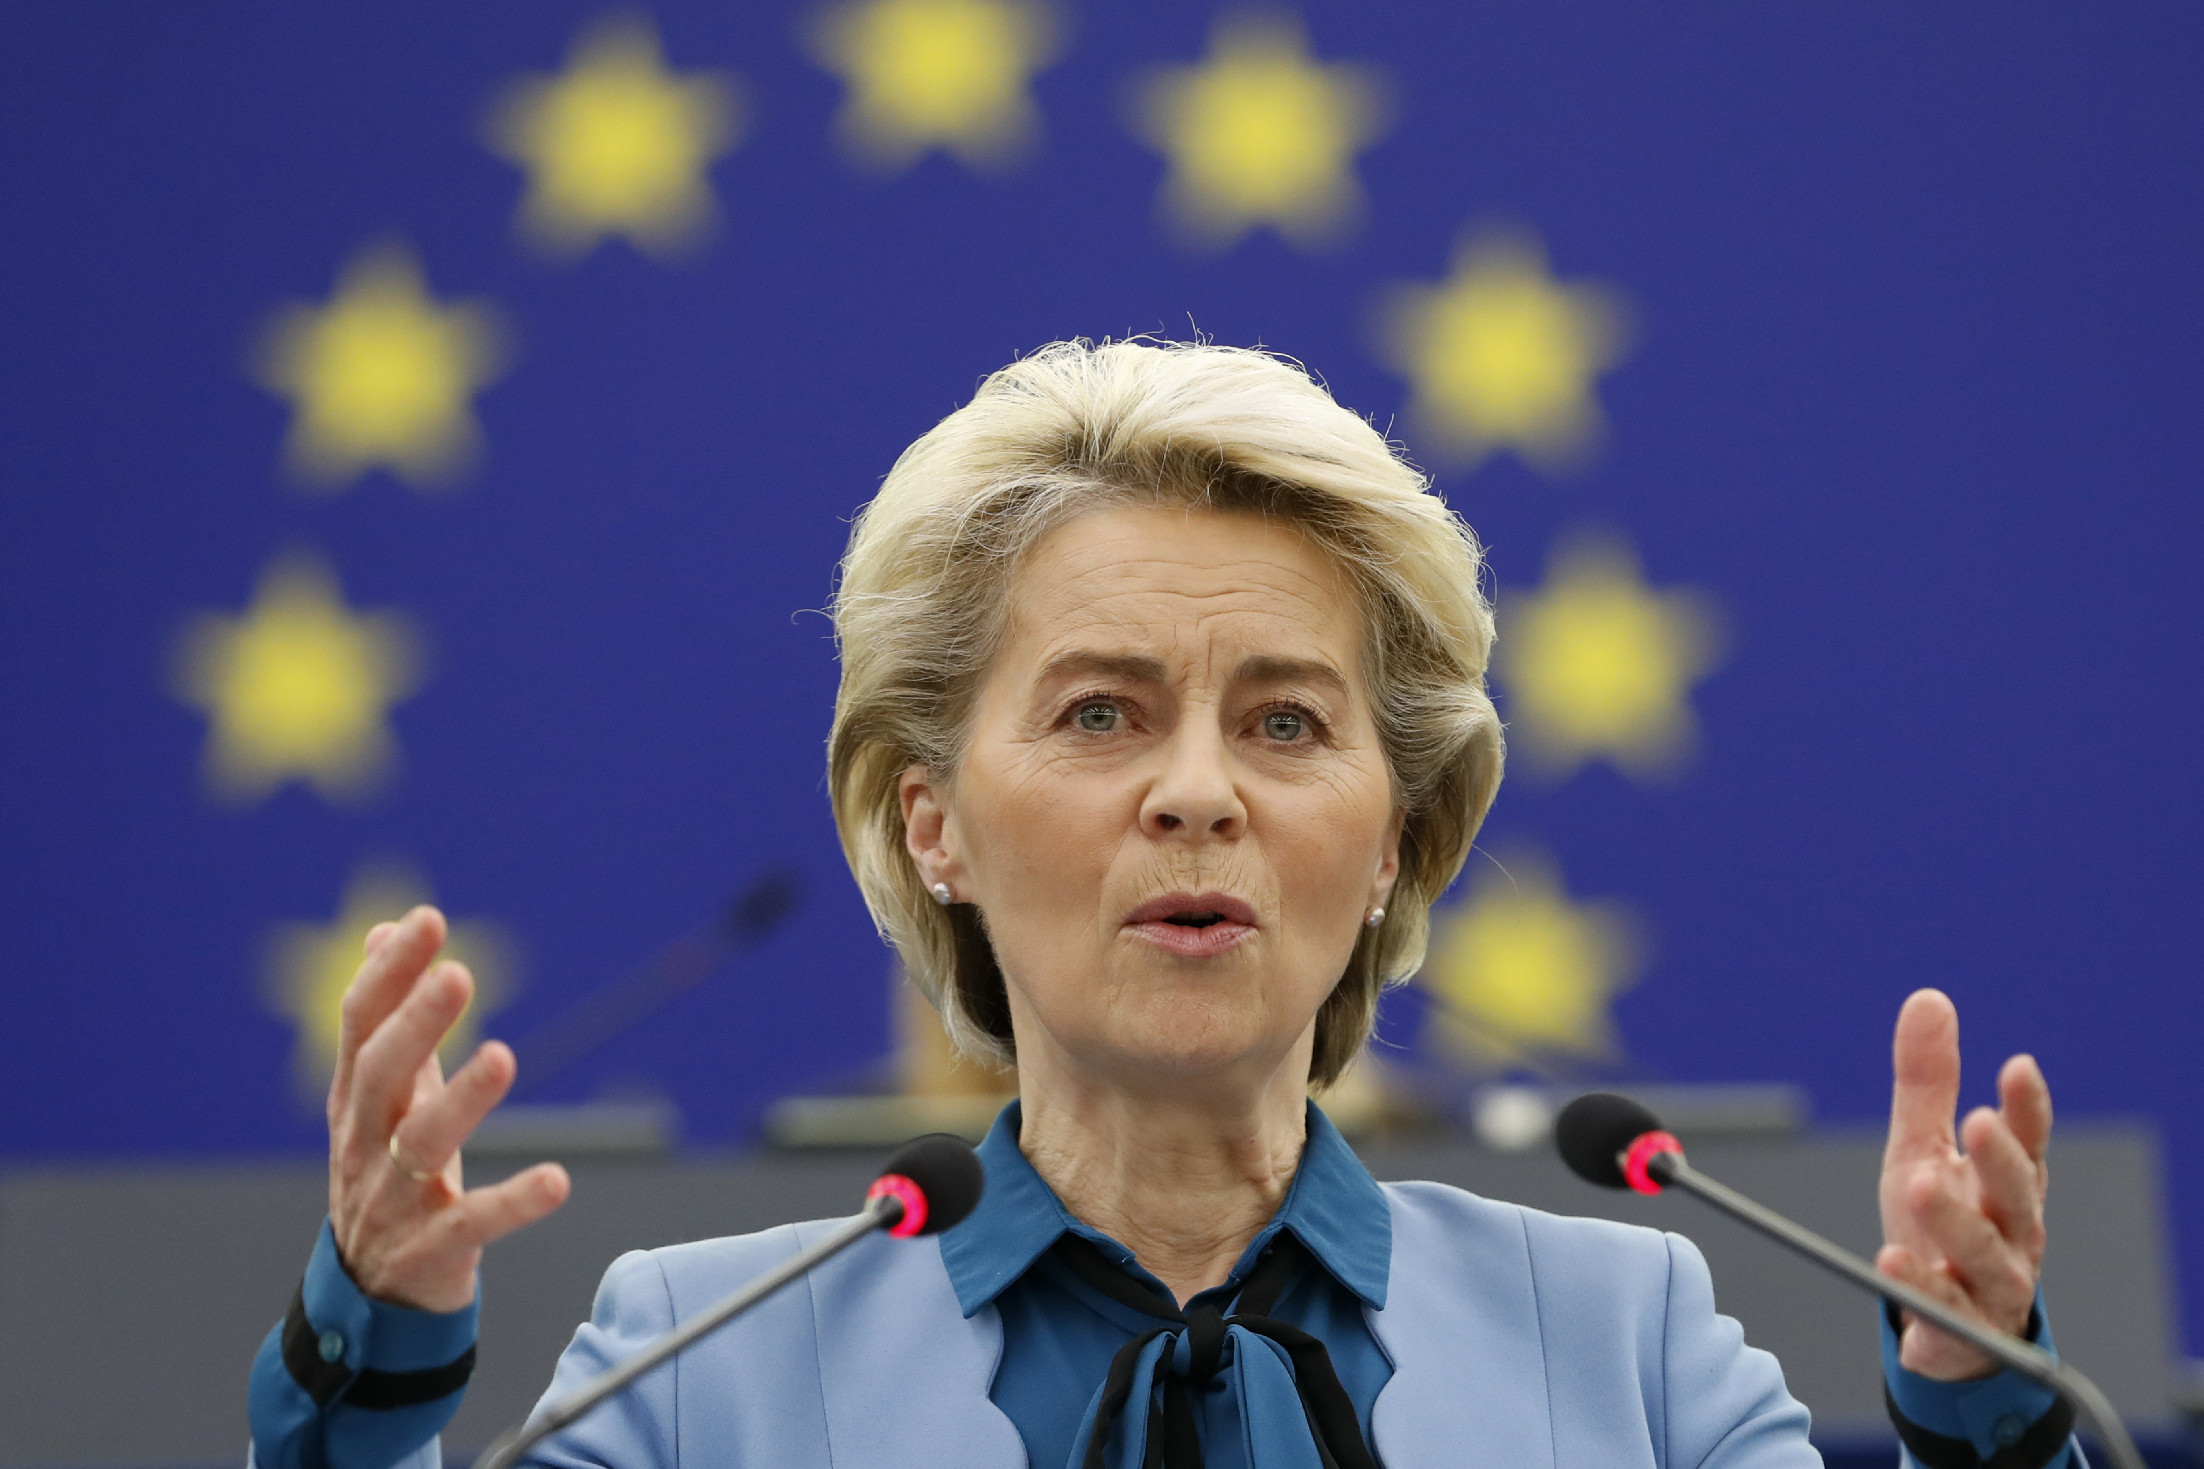 Népszava: halaszthatják a döntést az uniós források egyharmadának befagyasztásáról